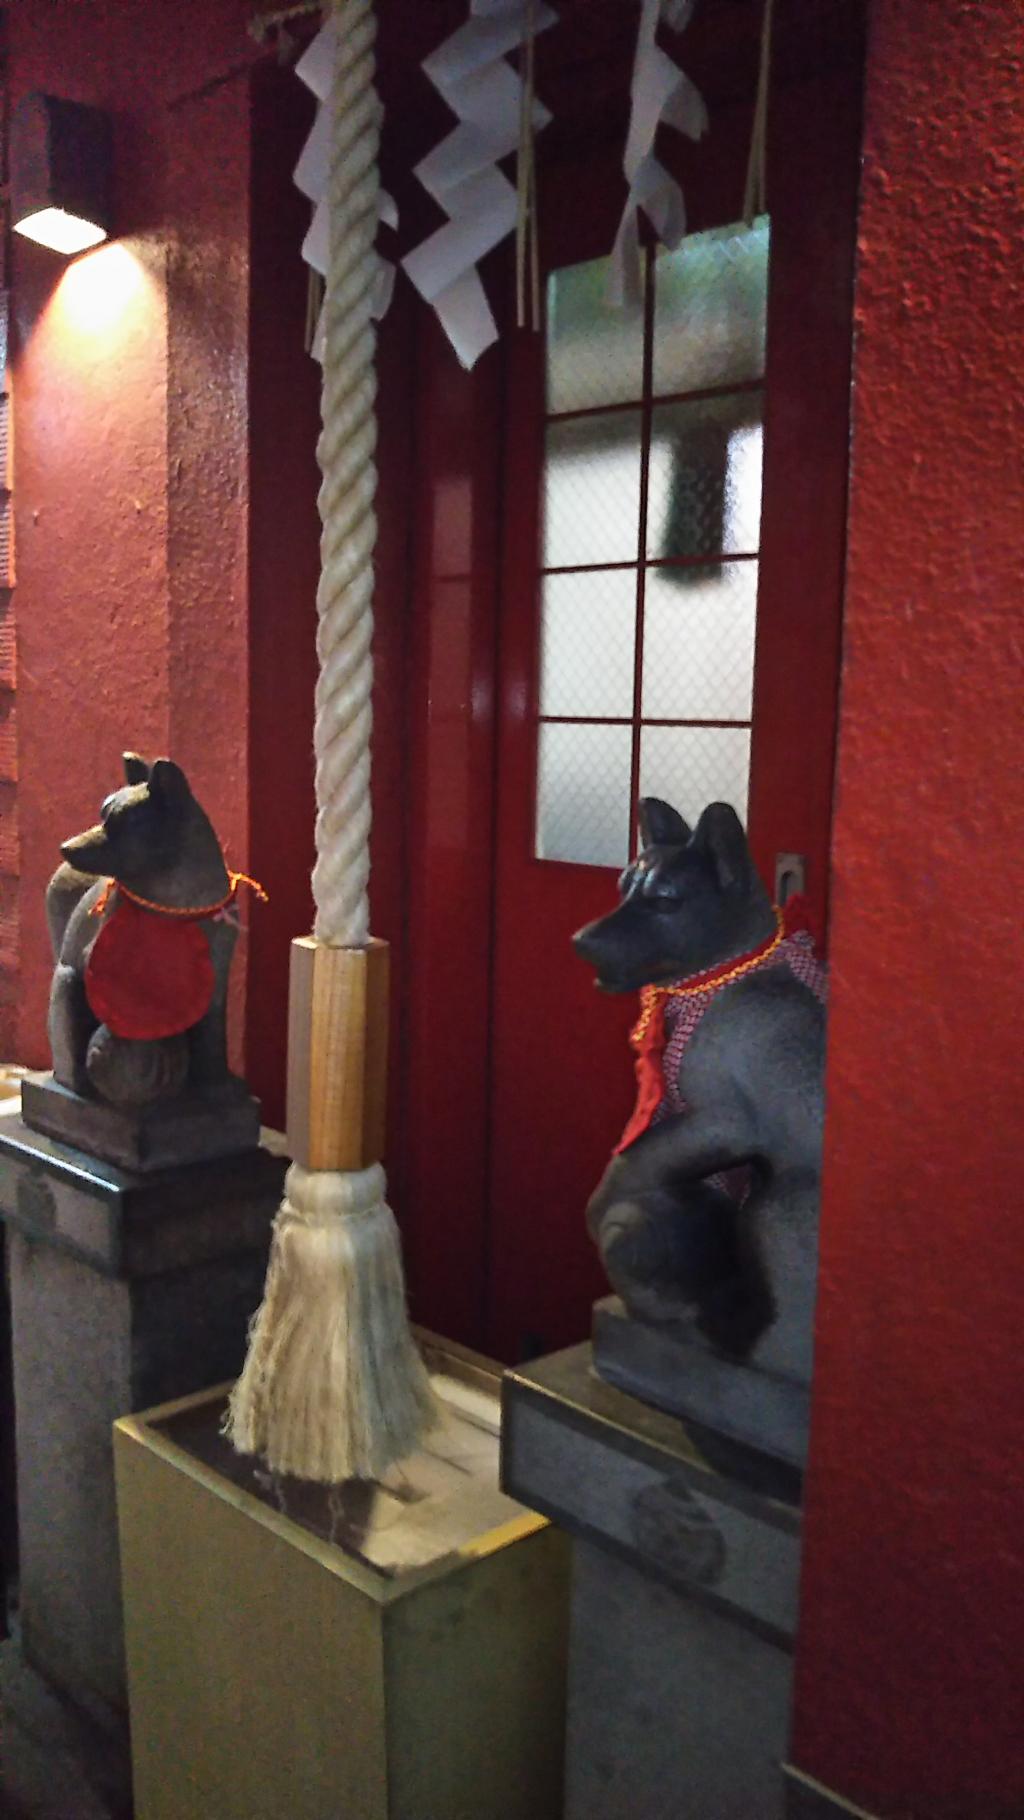  銀座の路地：豊岩稲荷神社と自動ドアのある路地